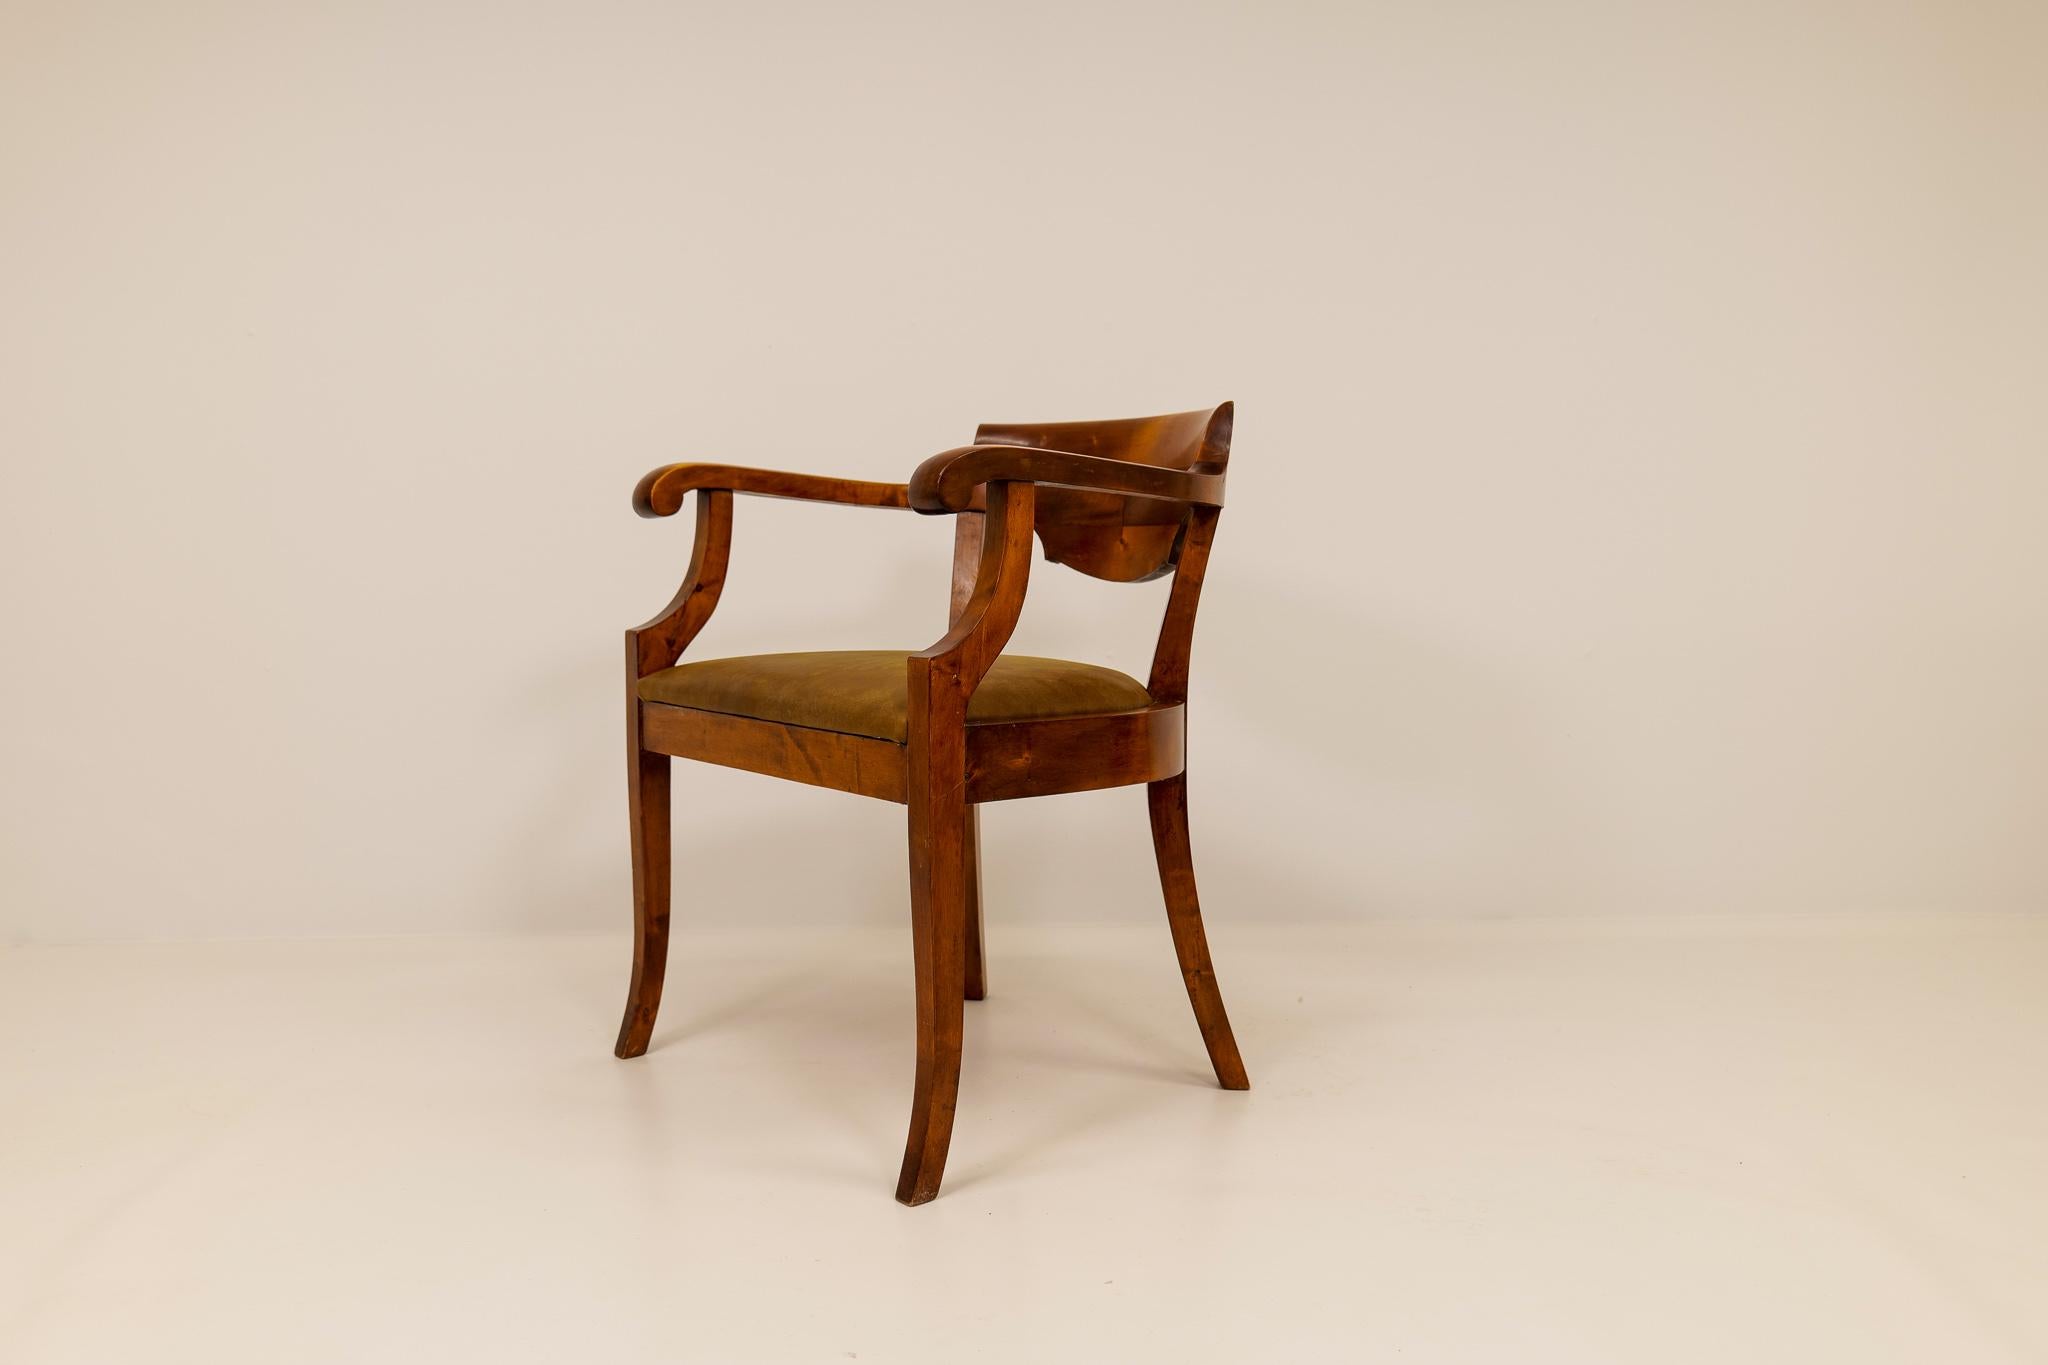 Une belle chaise de bureau dans le style Karl Johan, fabriquée en Suède dans les années 1920. Cette chaise a été laquée en acajou brun pour donner au bouleau un aspect encore plus exclusif. Le siège a été retapissé en cuir naturel marron foncé.